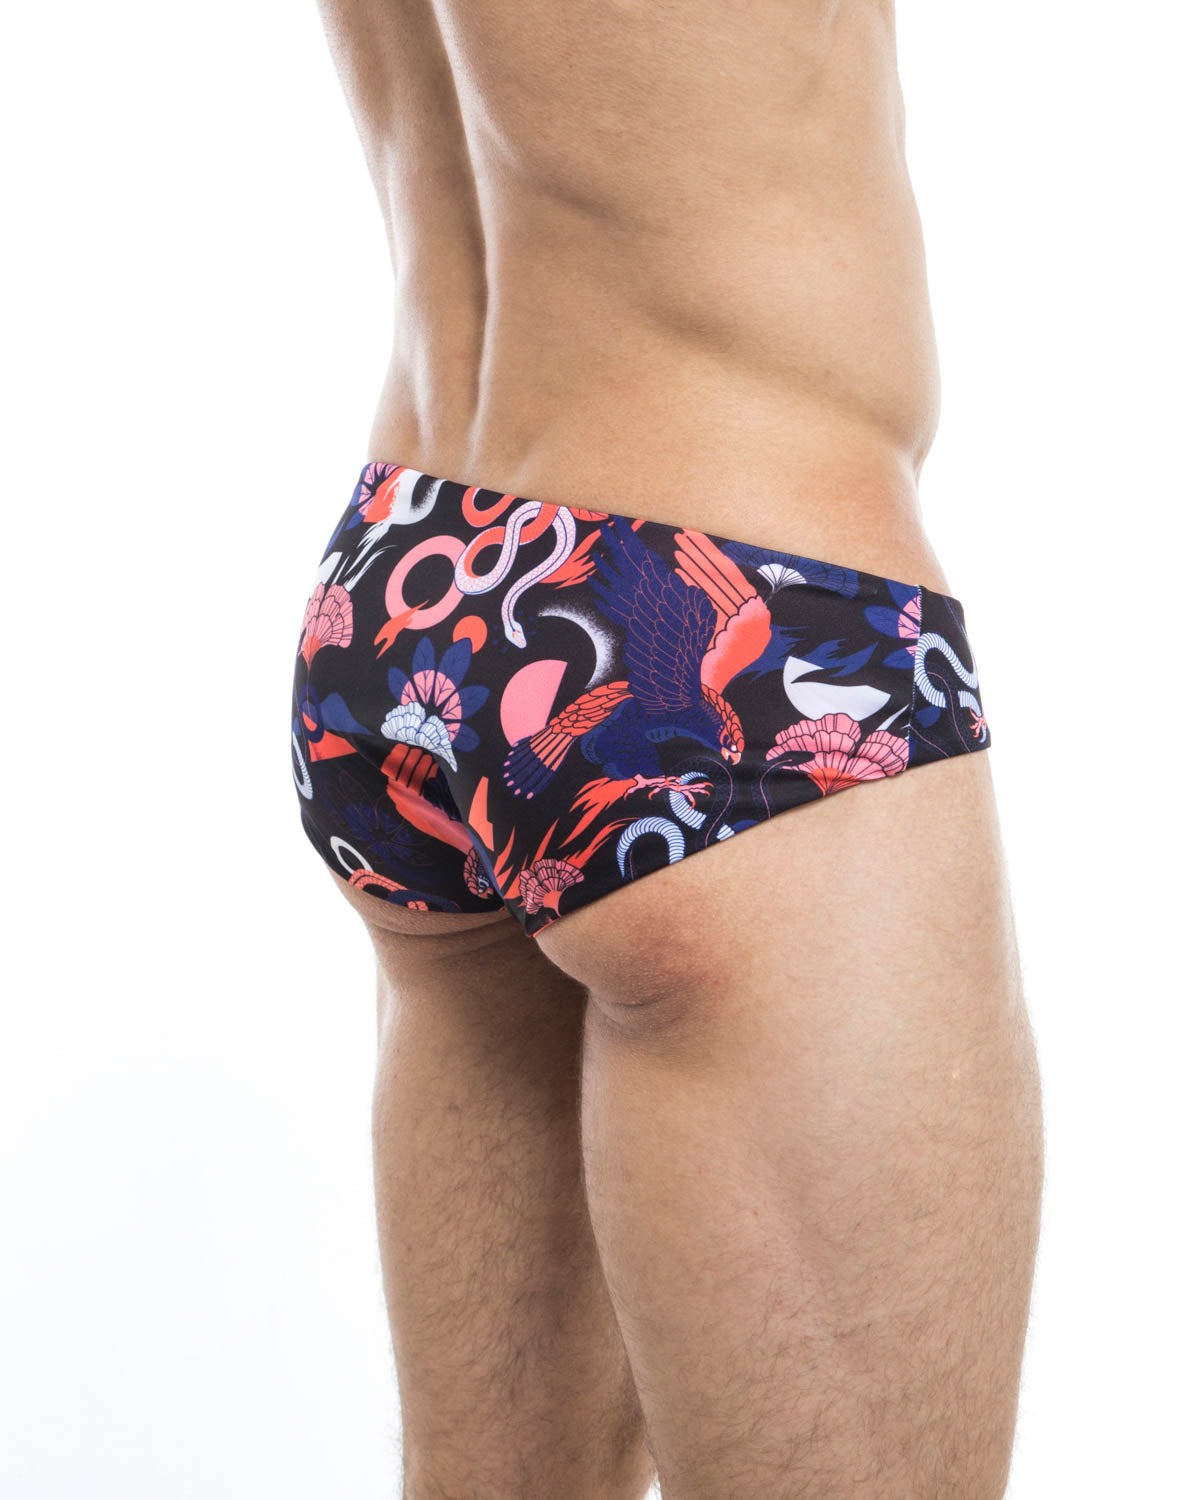 Men's swim briefs - HUNK2 Underwear Adler Reversible Swim Briefs available at MensUnderwear.io - Image 1